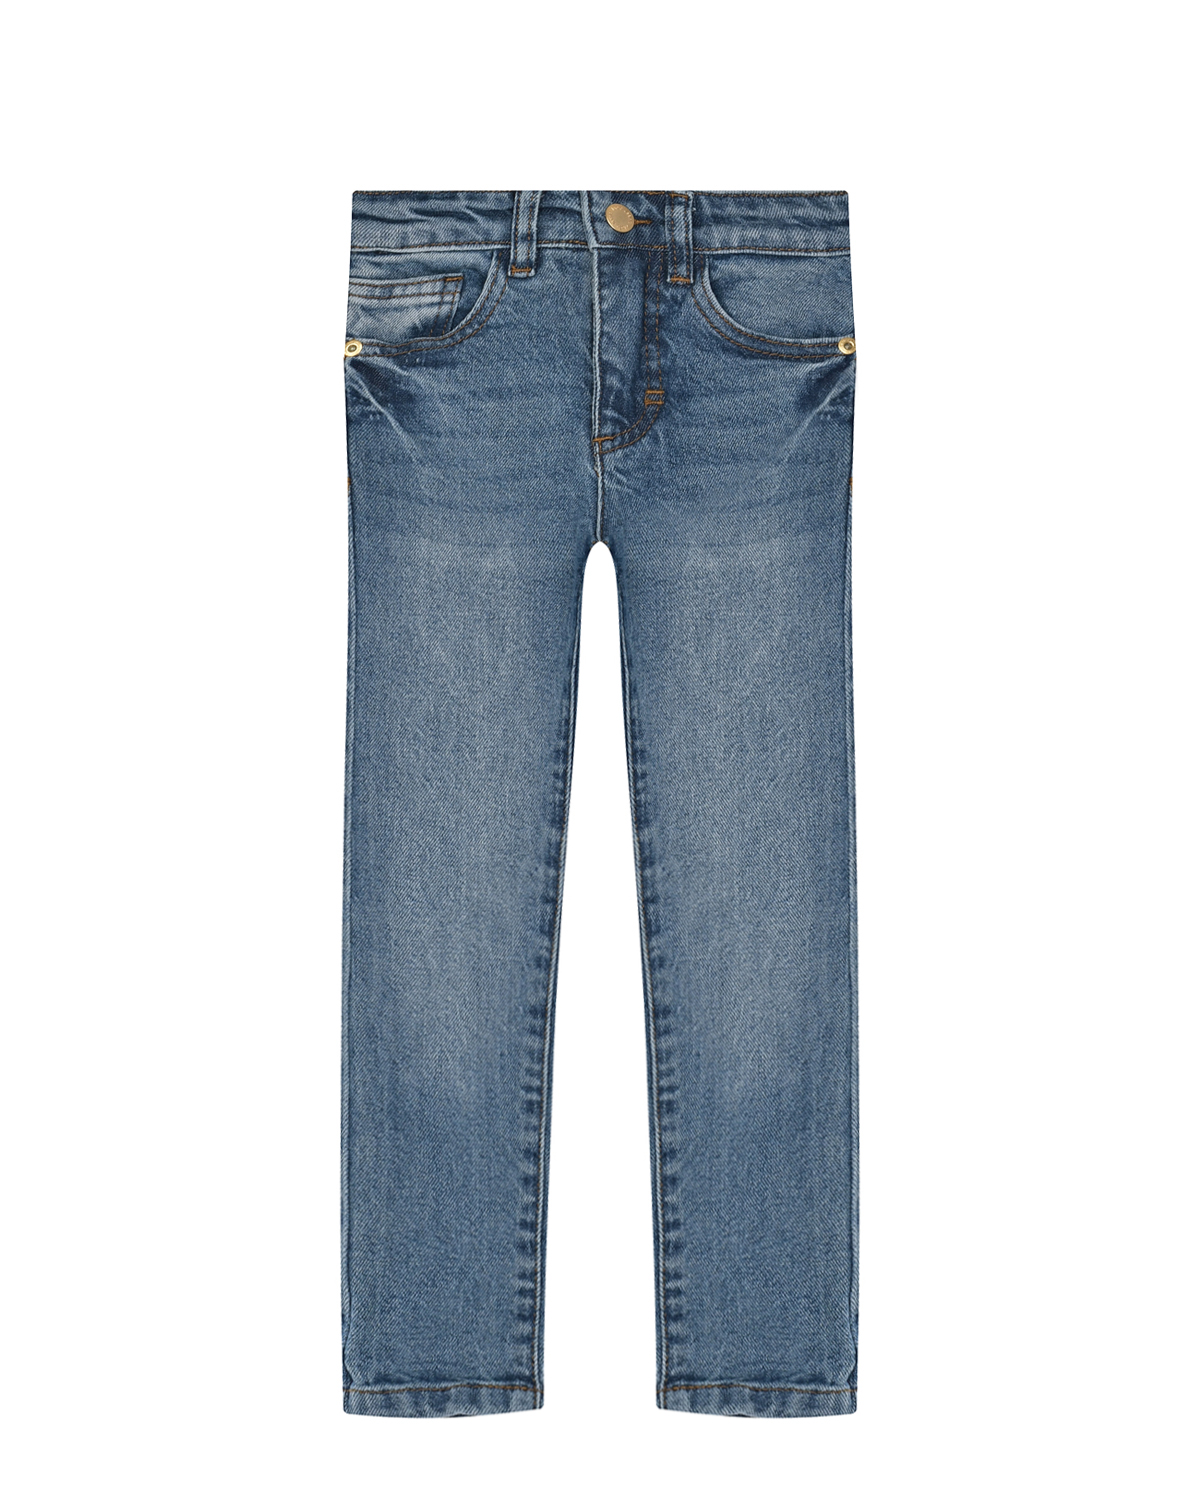 Брюки джинсовые Vintage Denim Molo детские, размер 110, цвет синий - фото 1